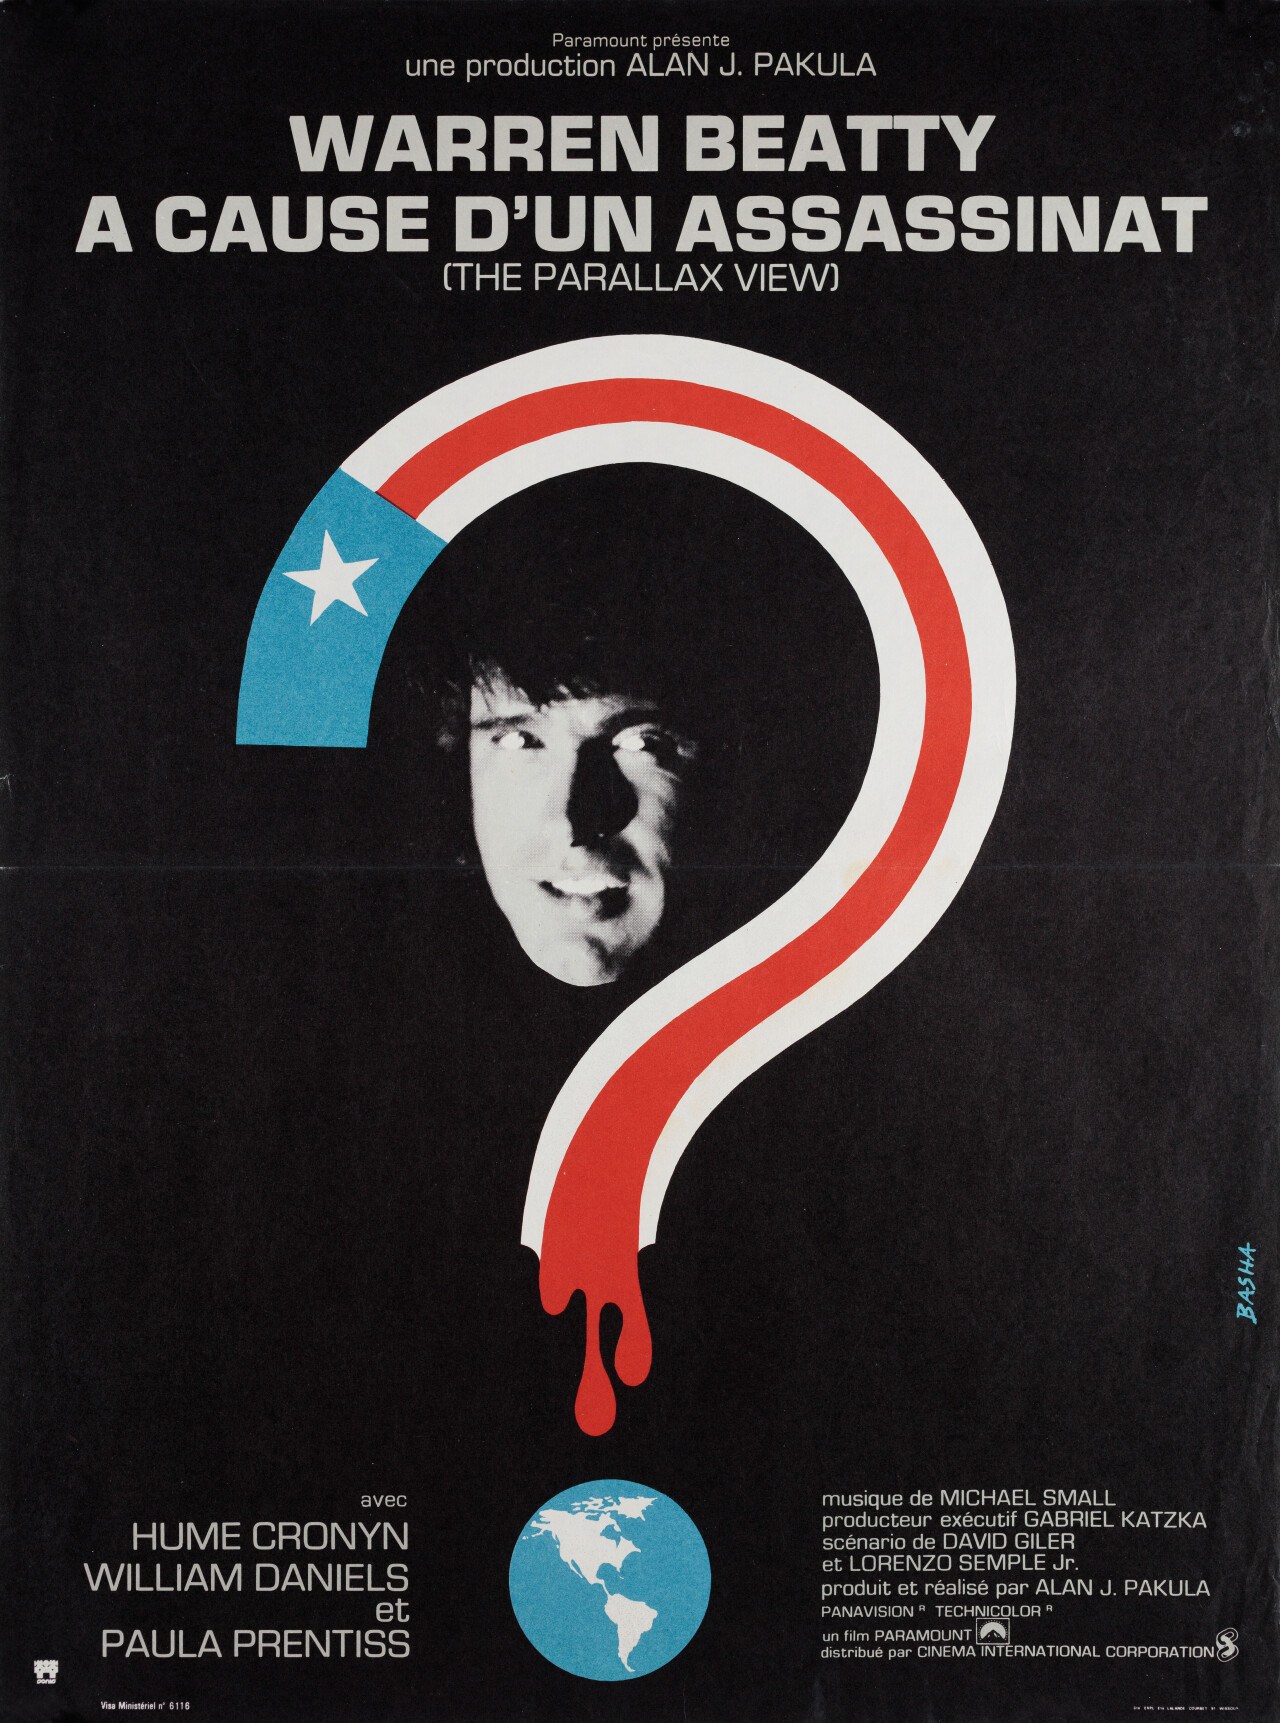 Заговор Параллакс (The Parallax View, 1974), режиссёр Алан Дж. Пакула, французский постер к фильму, автор Барбара Барановска (графический дизайн, 1974 год)